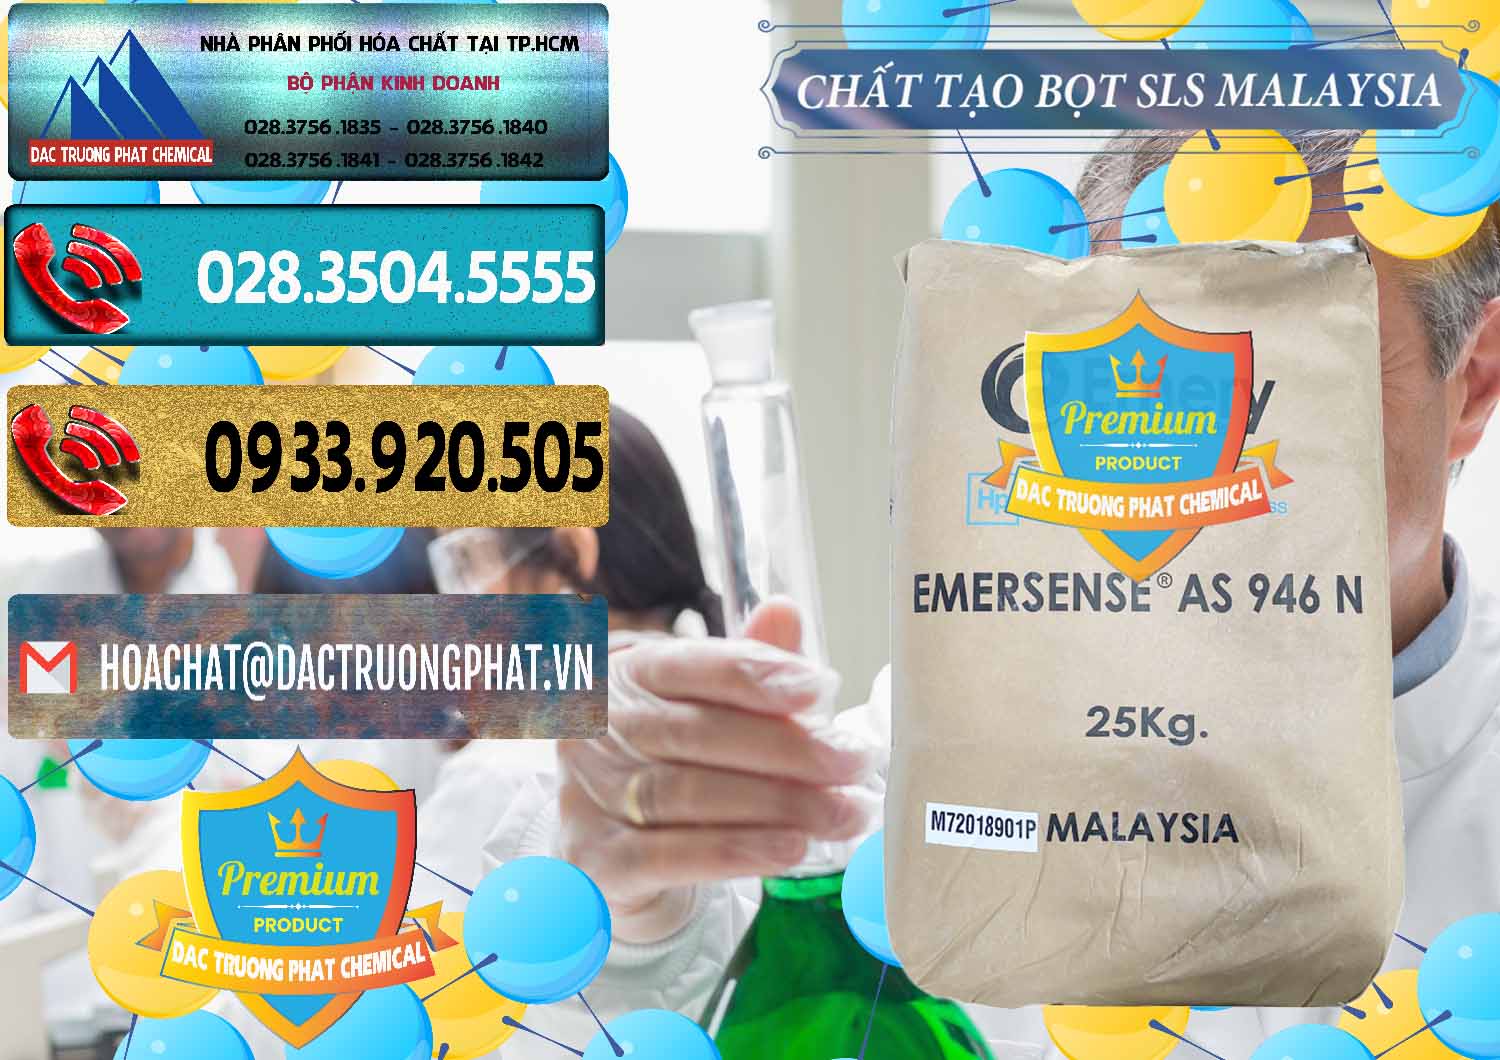 Đơn vị chuyên cung cấp và bán Chất Tạo Bọt SLS Emery - Emersense AS 946N Mã Lai Malaysia - 0423 - Nơi chuyên nhập khẩu & phân phối hóa chất tại TP.HCM - hoachatdetnhuom.com